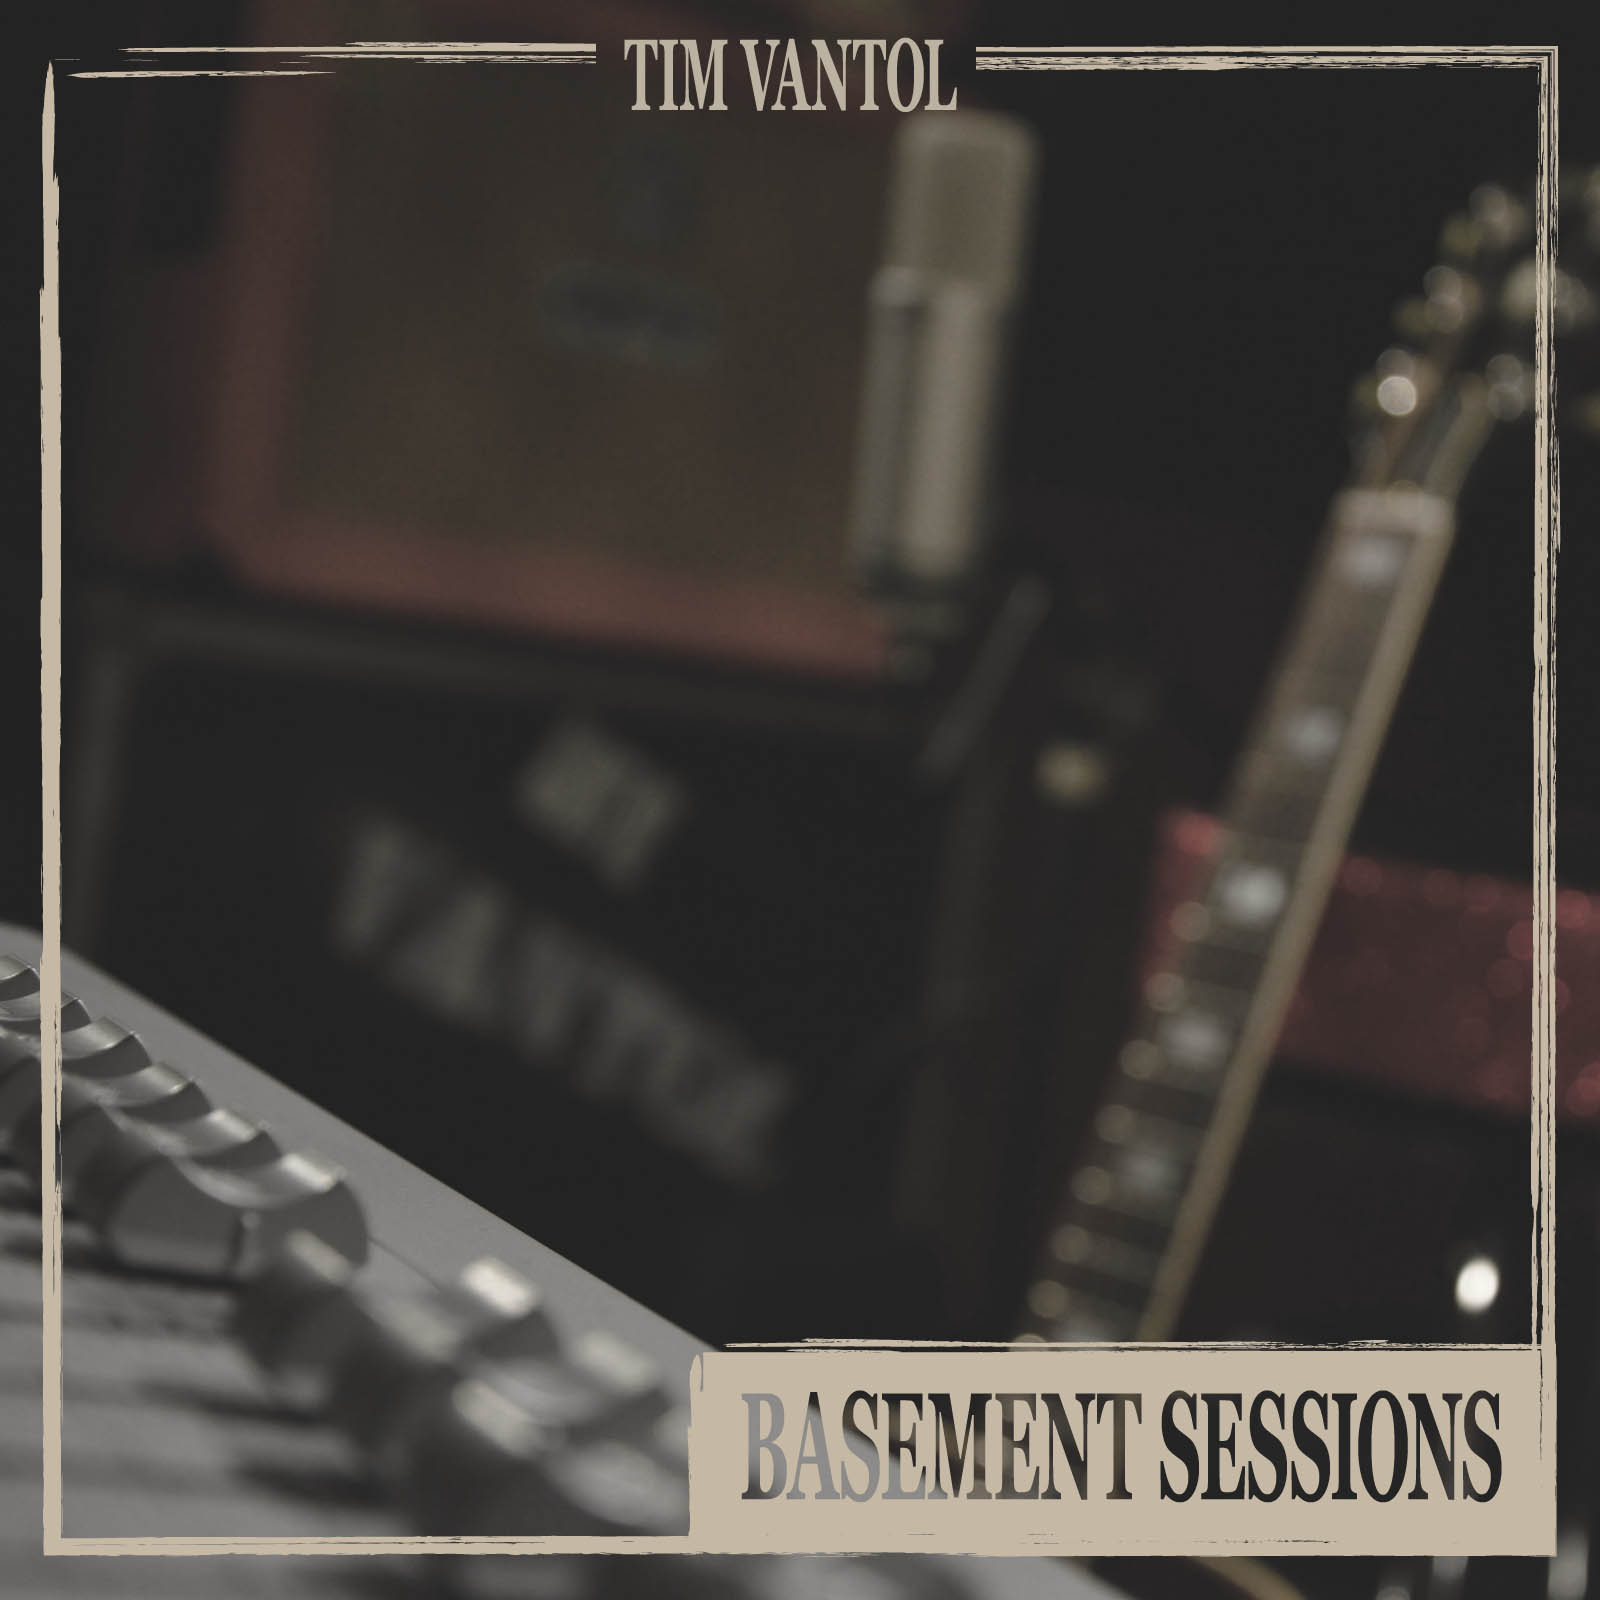 Tim vantol – Basement Sessions